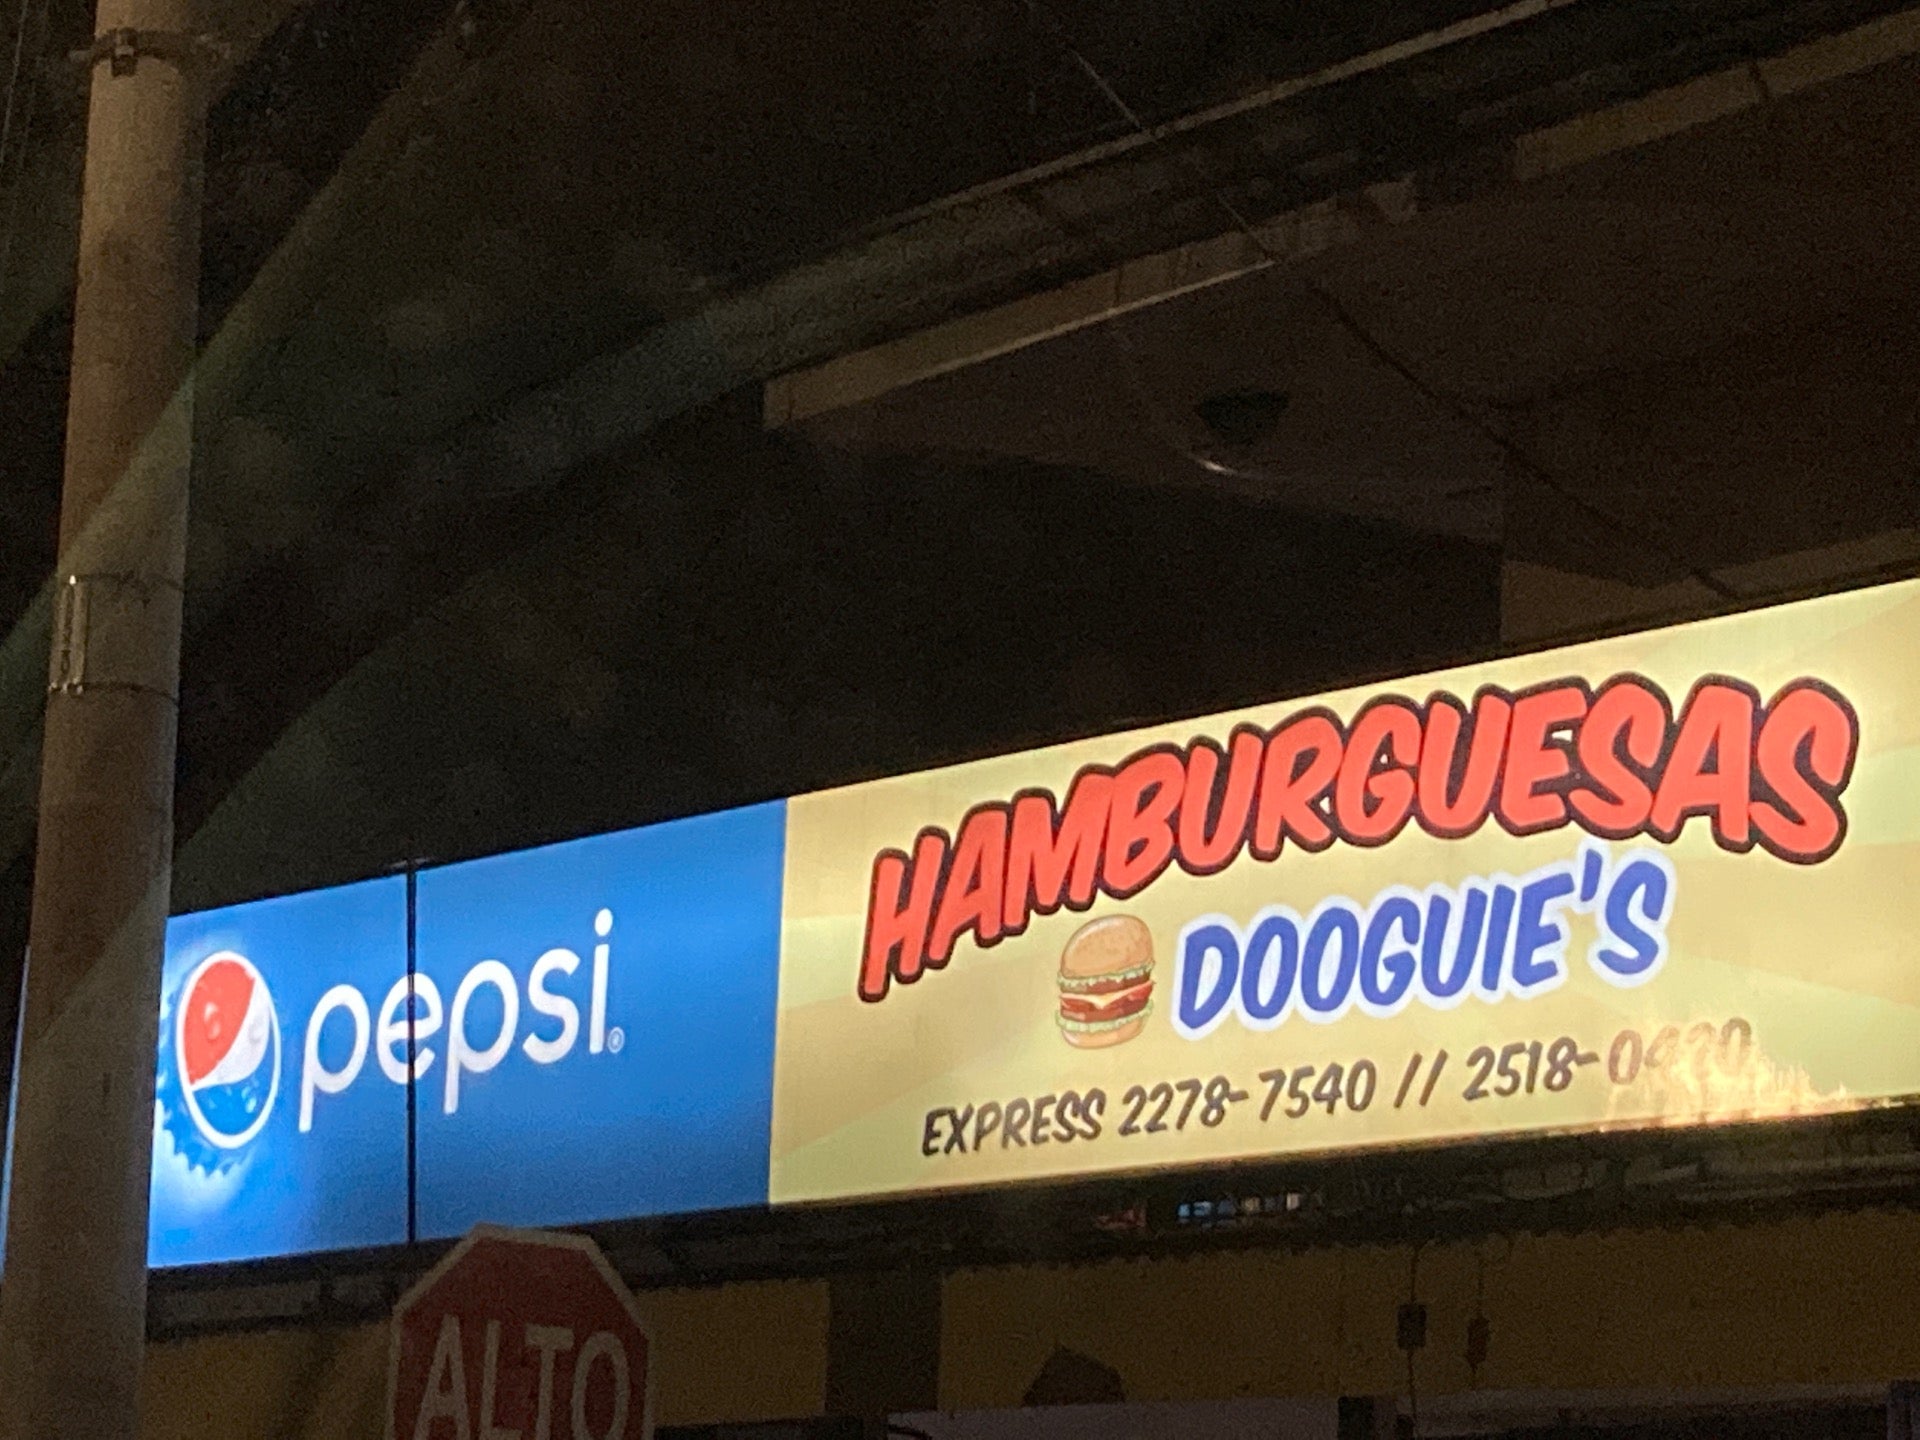 Dooguie's